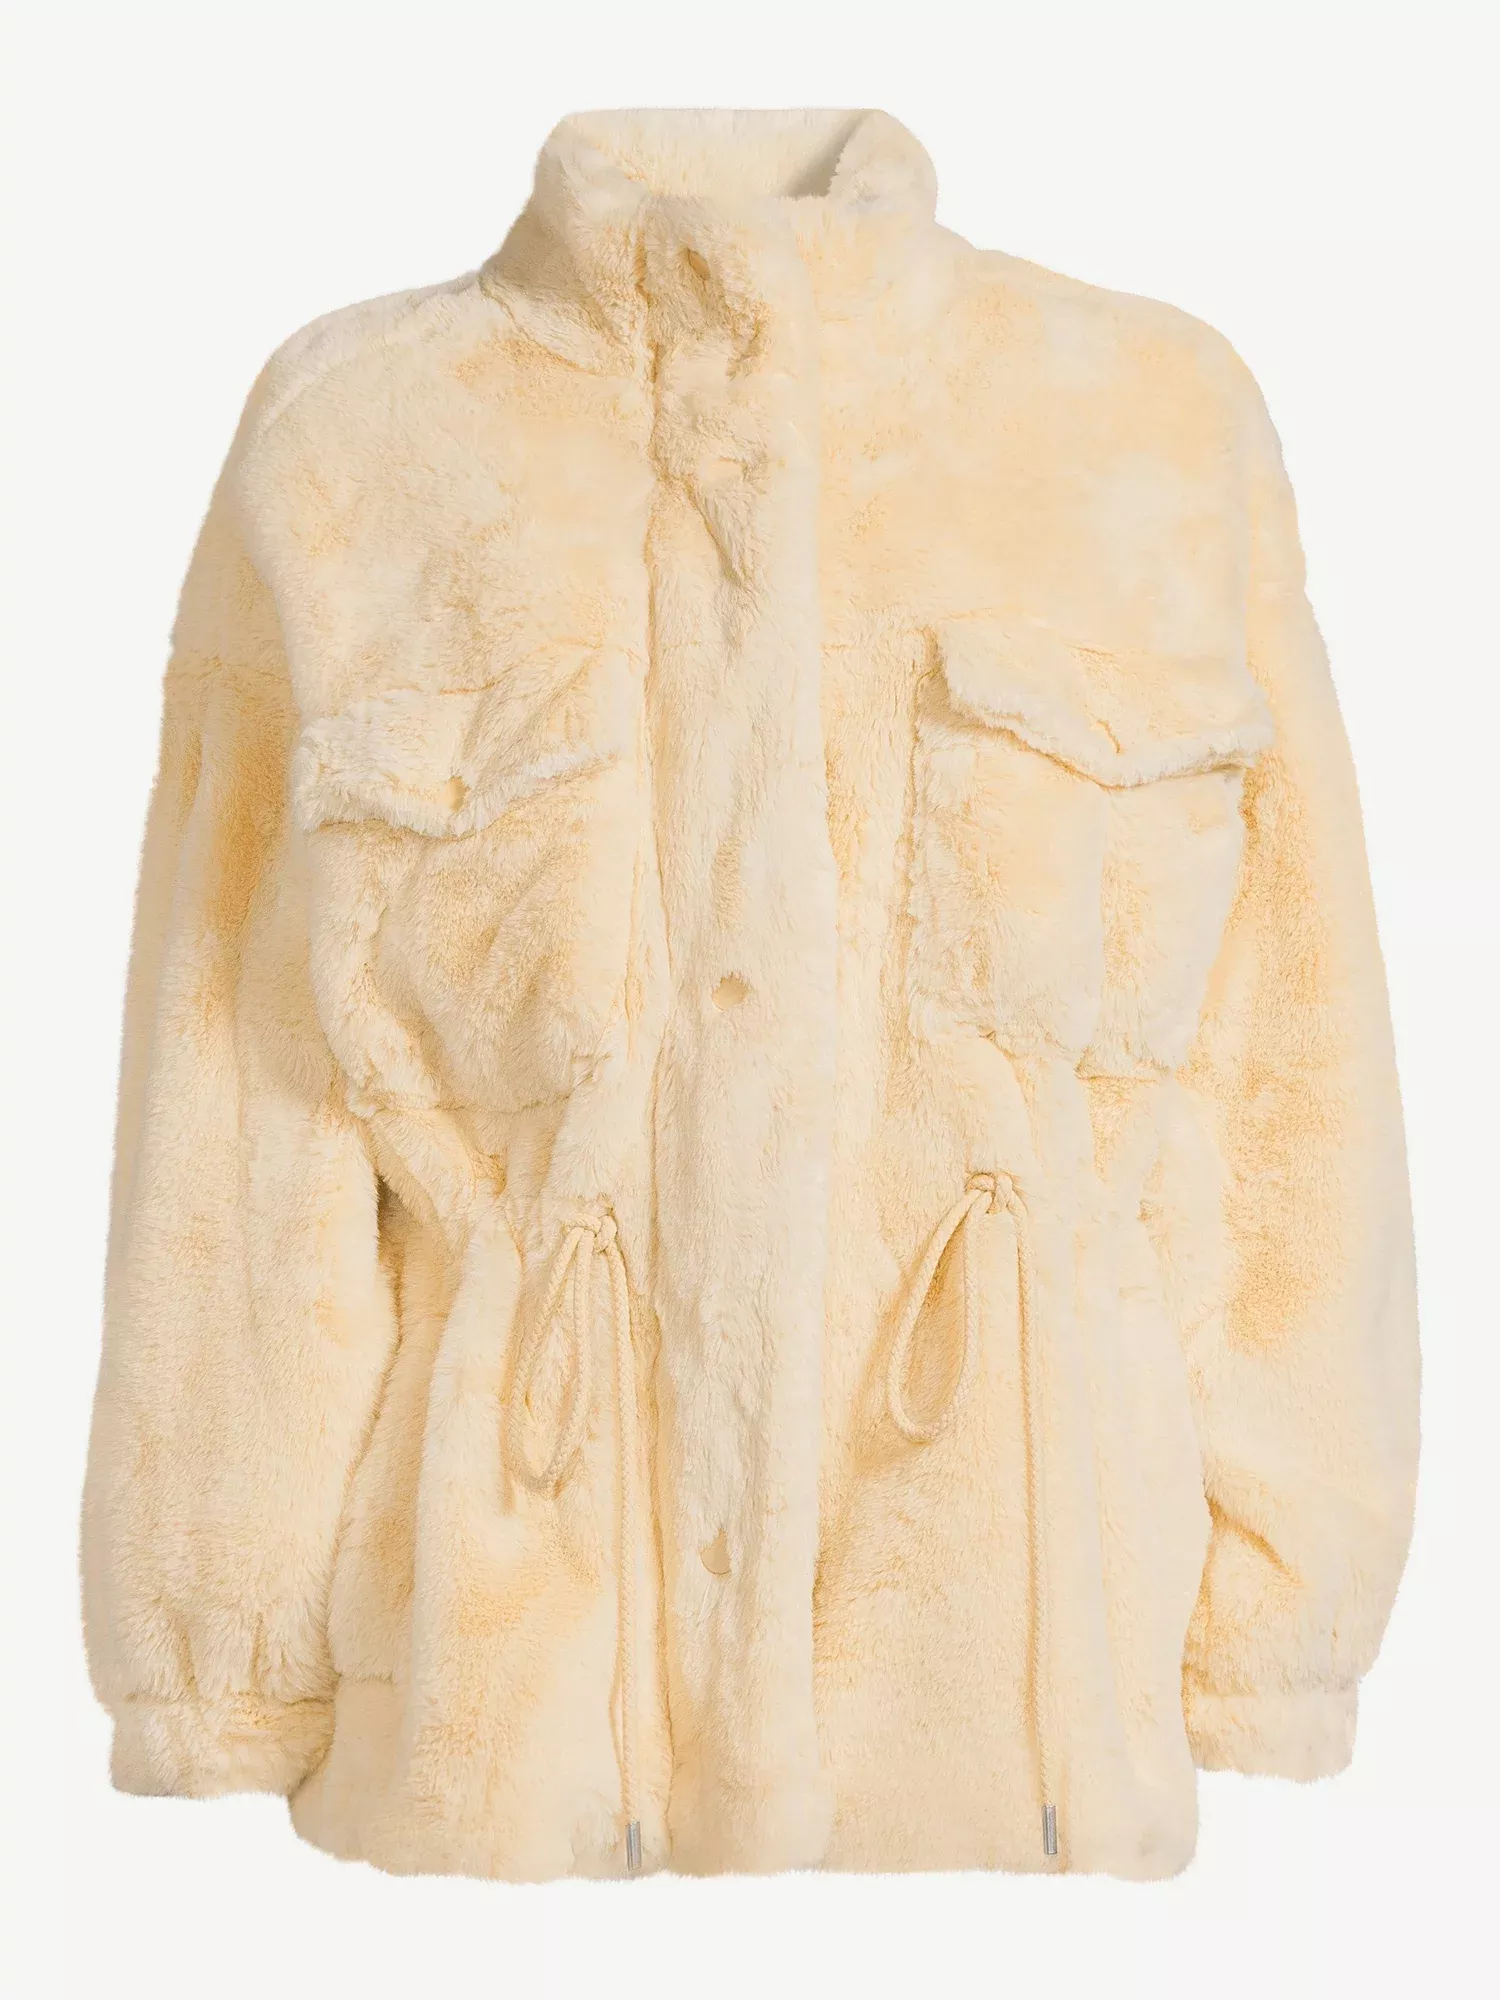 Scoop Women's Faux Fur Oversized Jacket with Cinch Waist 